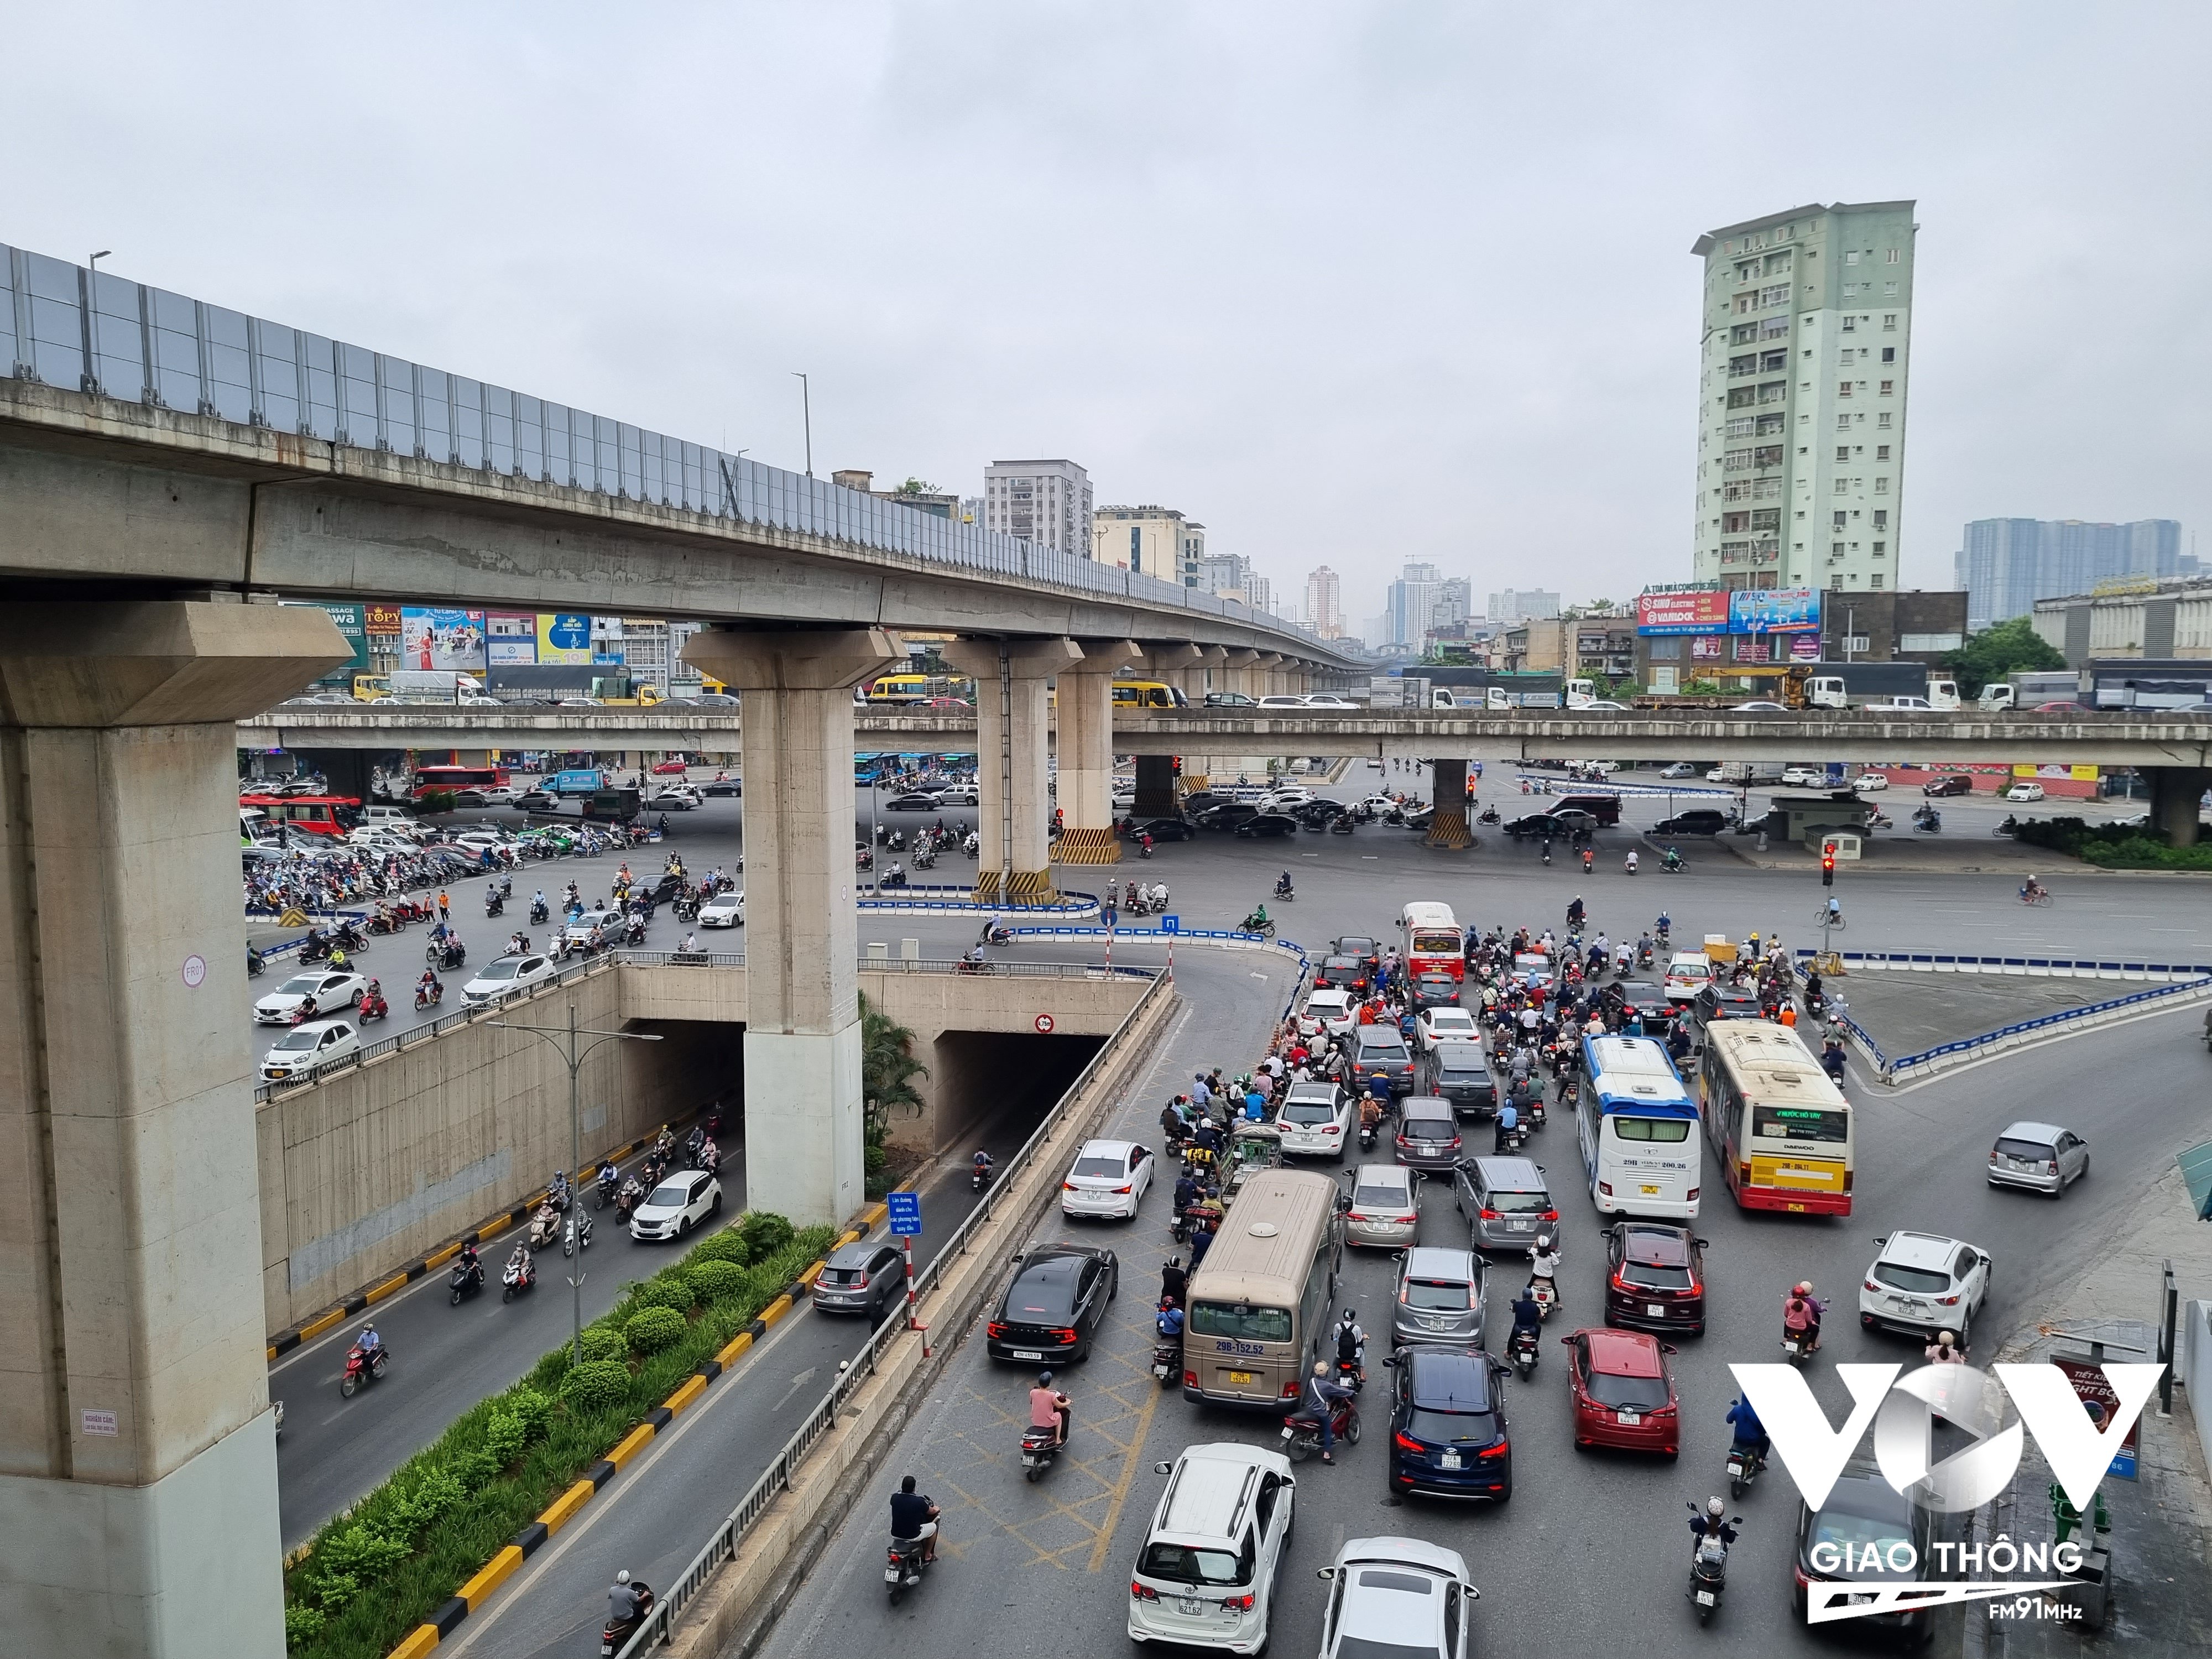 Ngã tư Nguyễn Trãi - Khuất Duy Tiến - Nguyễn Xiển là nút giao hiện đại bậc nhất, nút 4 tầng đầu tiên của Hà Nội và cả nước, gồm hầm chui, mặt đất, cao tốc trên cao và đường sắt đô thị.